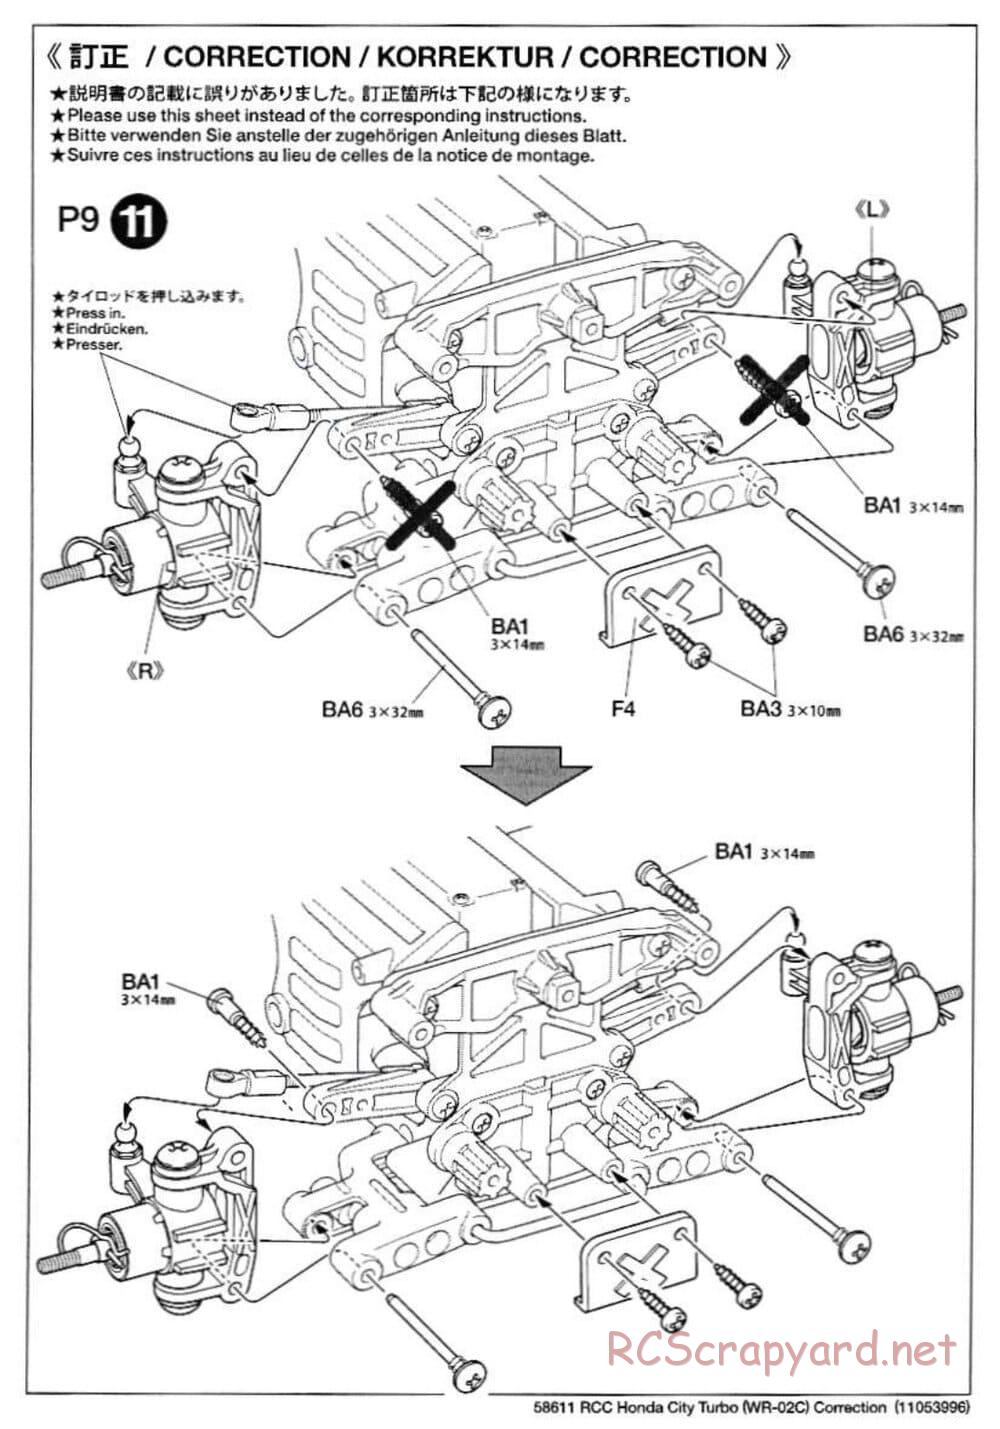 Tamiya - Honda City Turbo - WR-02C Chassis - Manual - Page 25